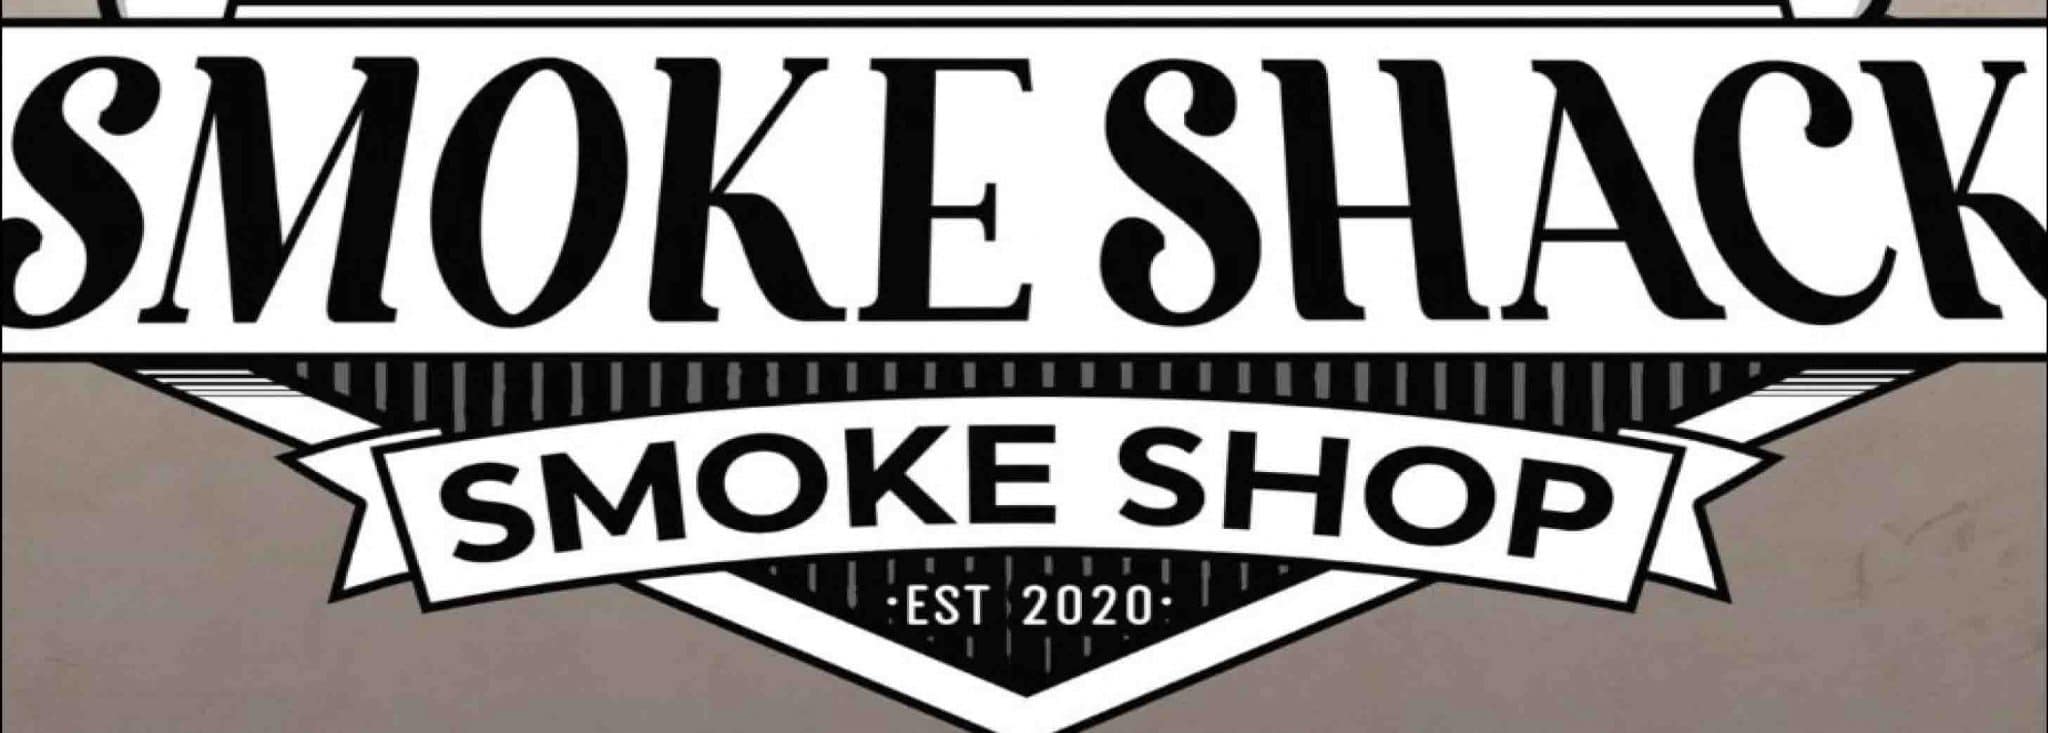 smoke-shack-smoke-shop